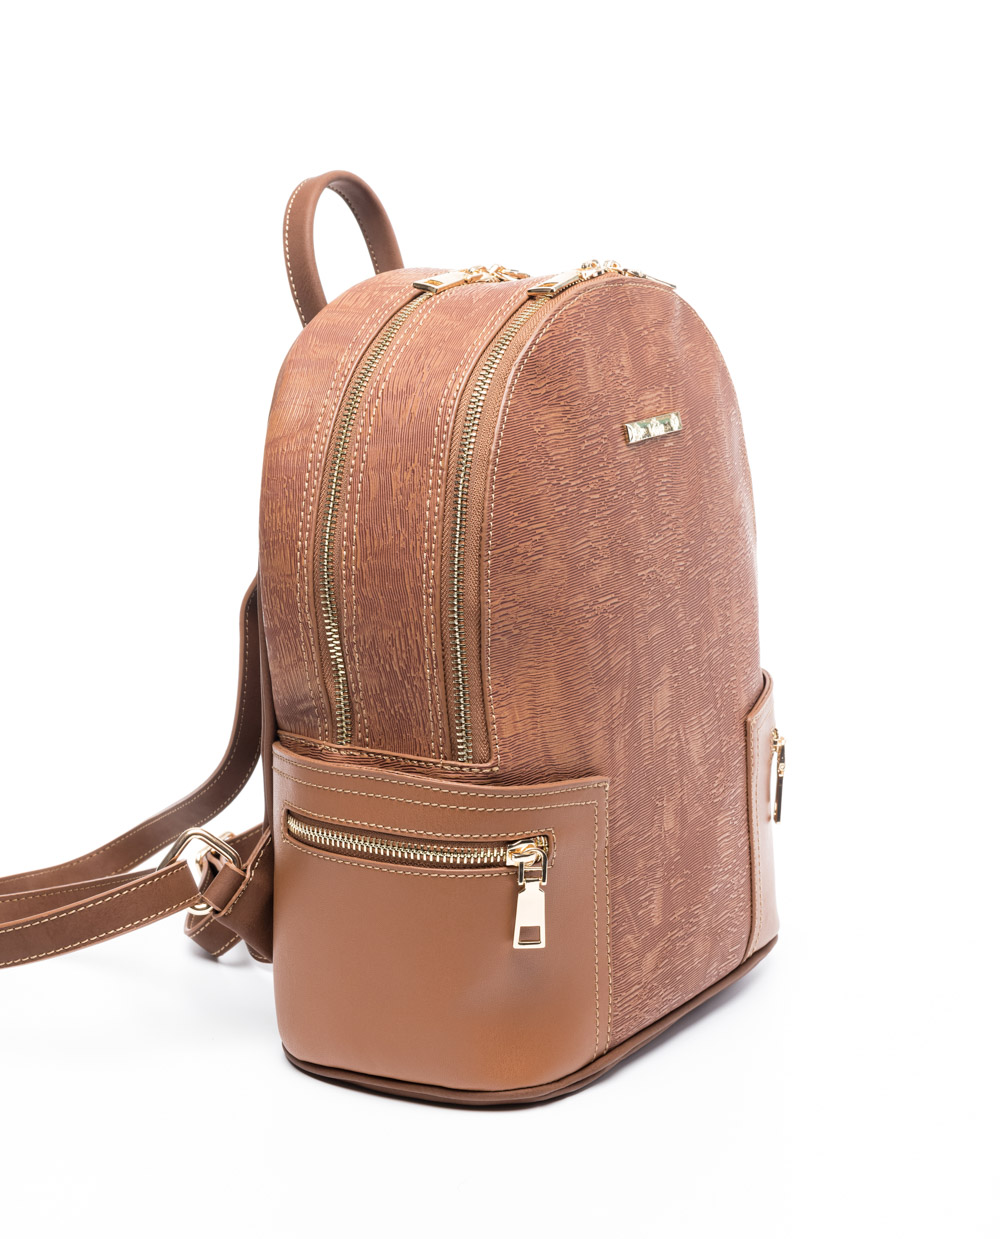 BAGS: Veta women's backpack in tampa color